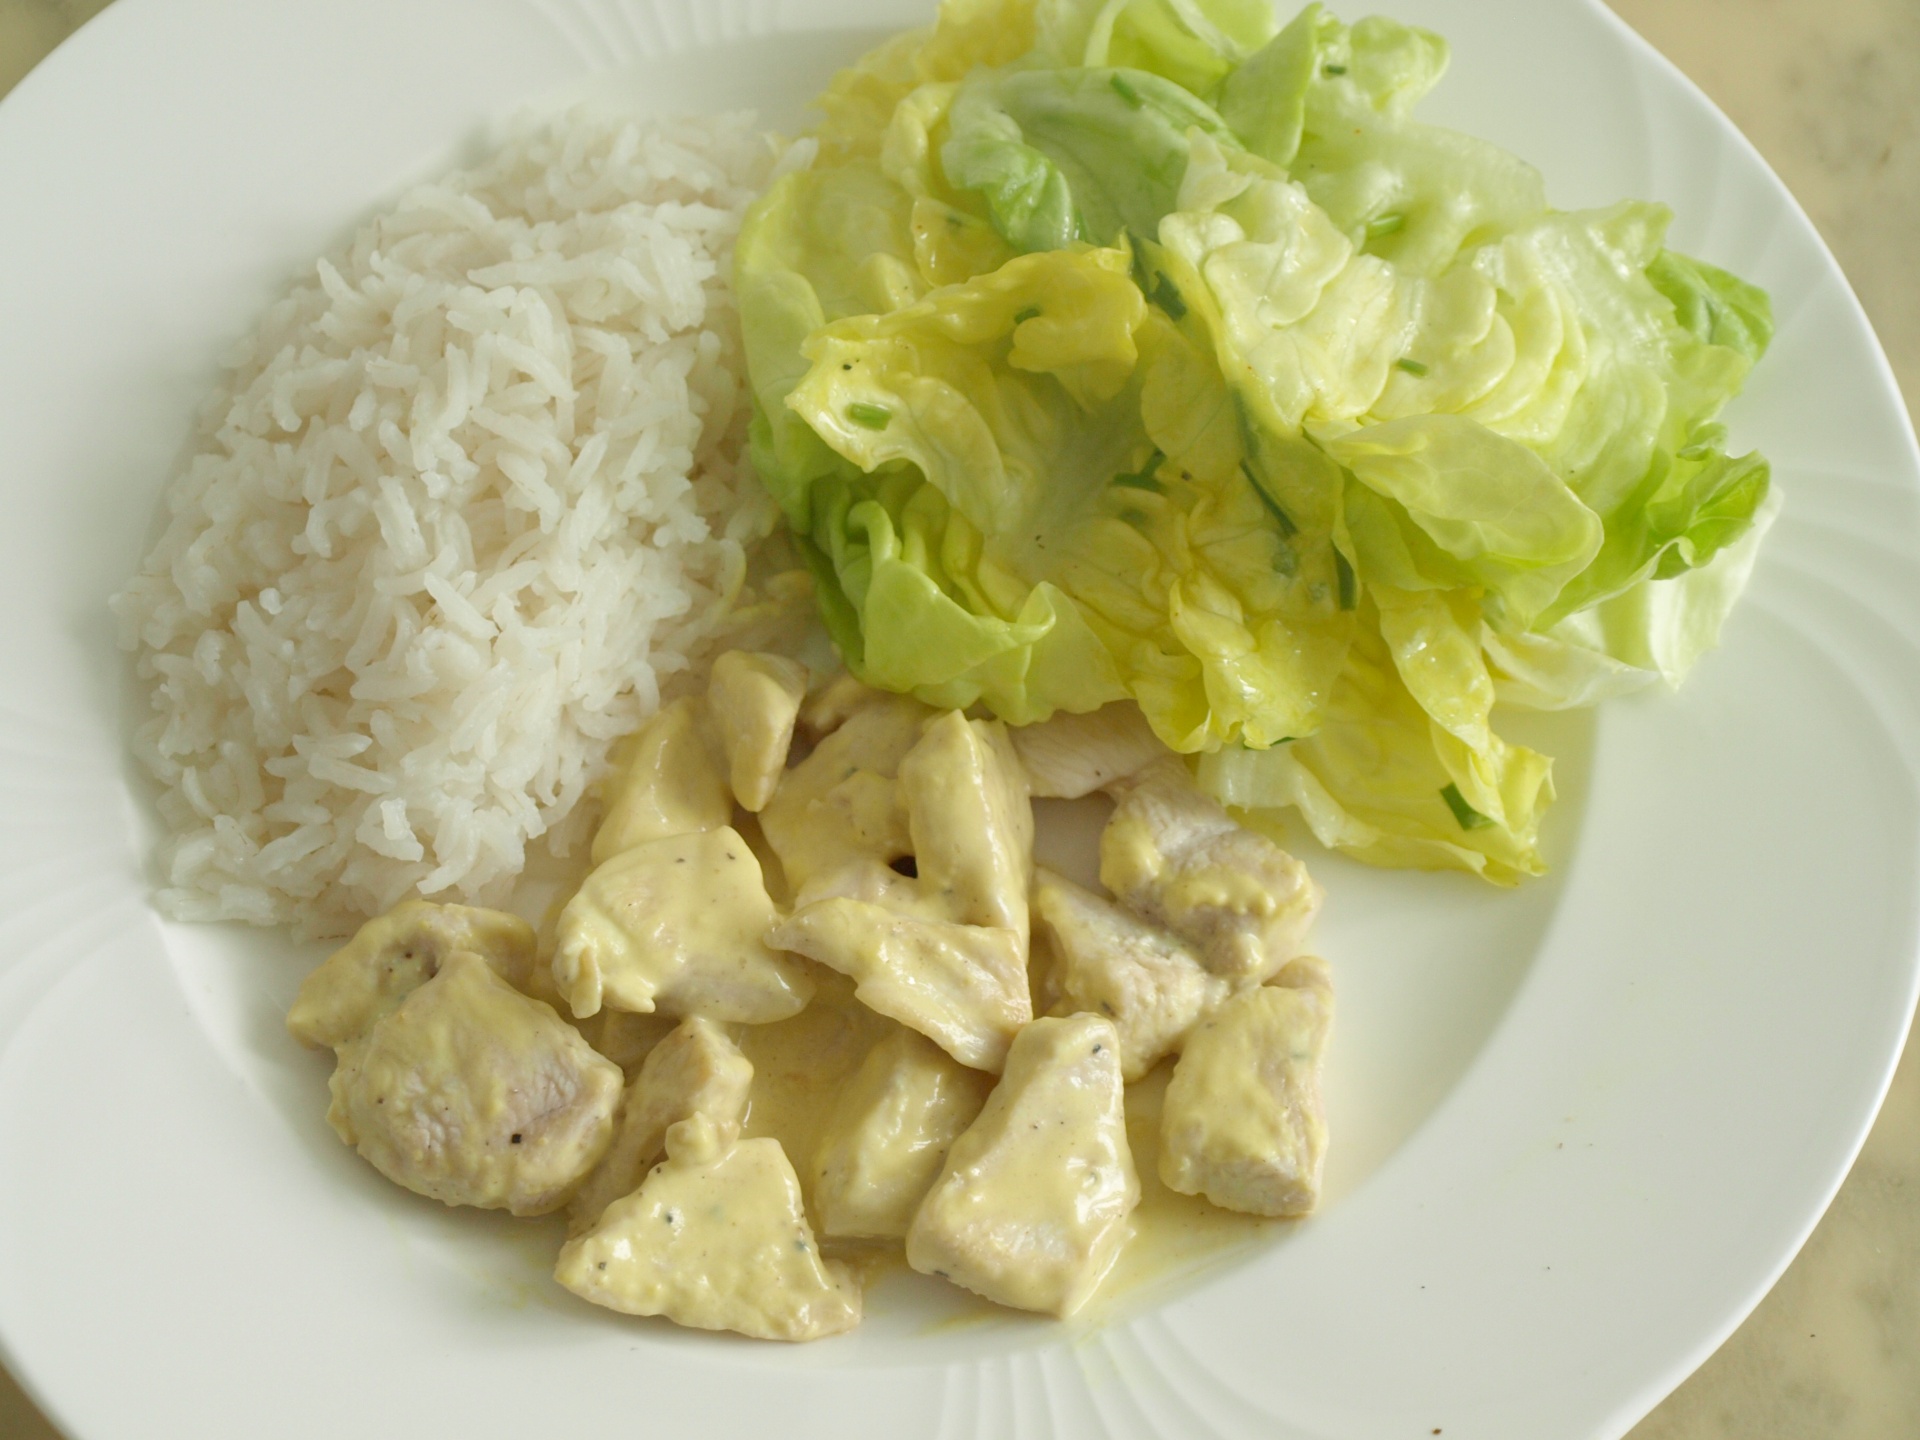 Hhnchenbrust geschnetzelt mit Reis und Salat